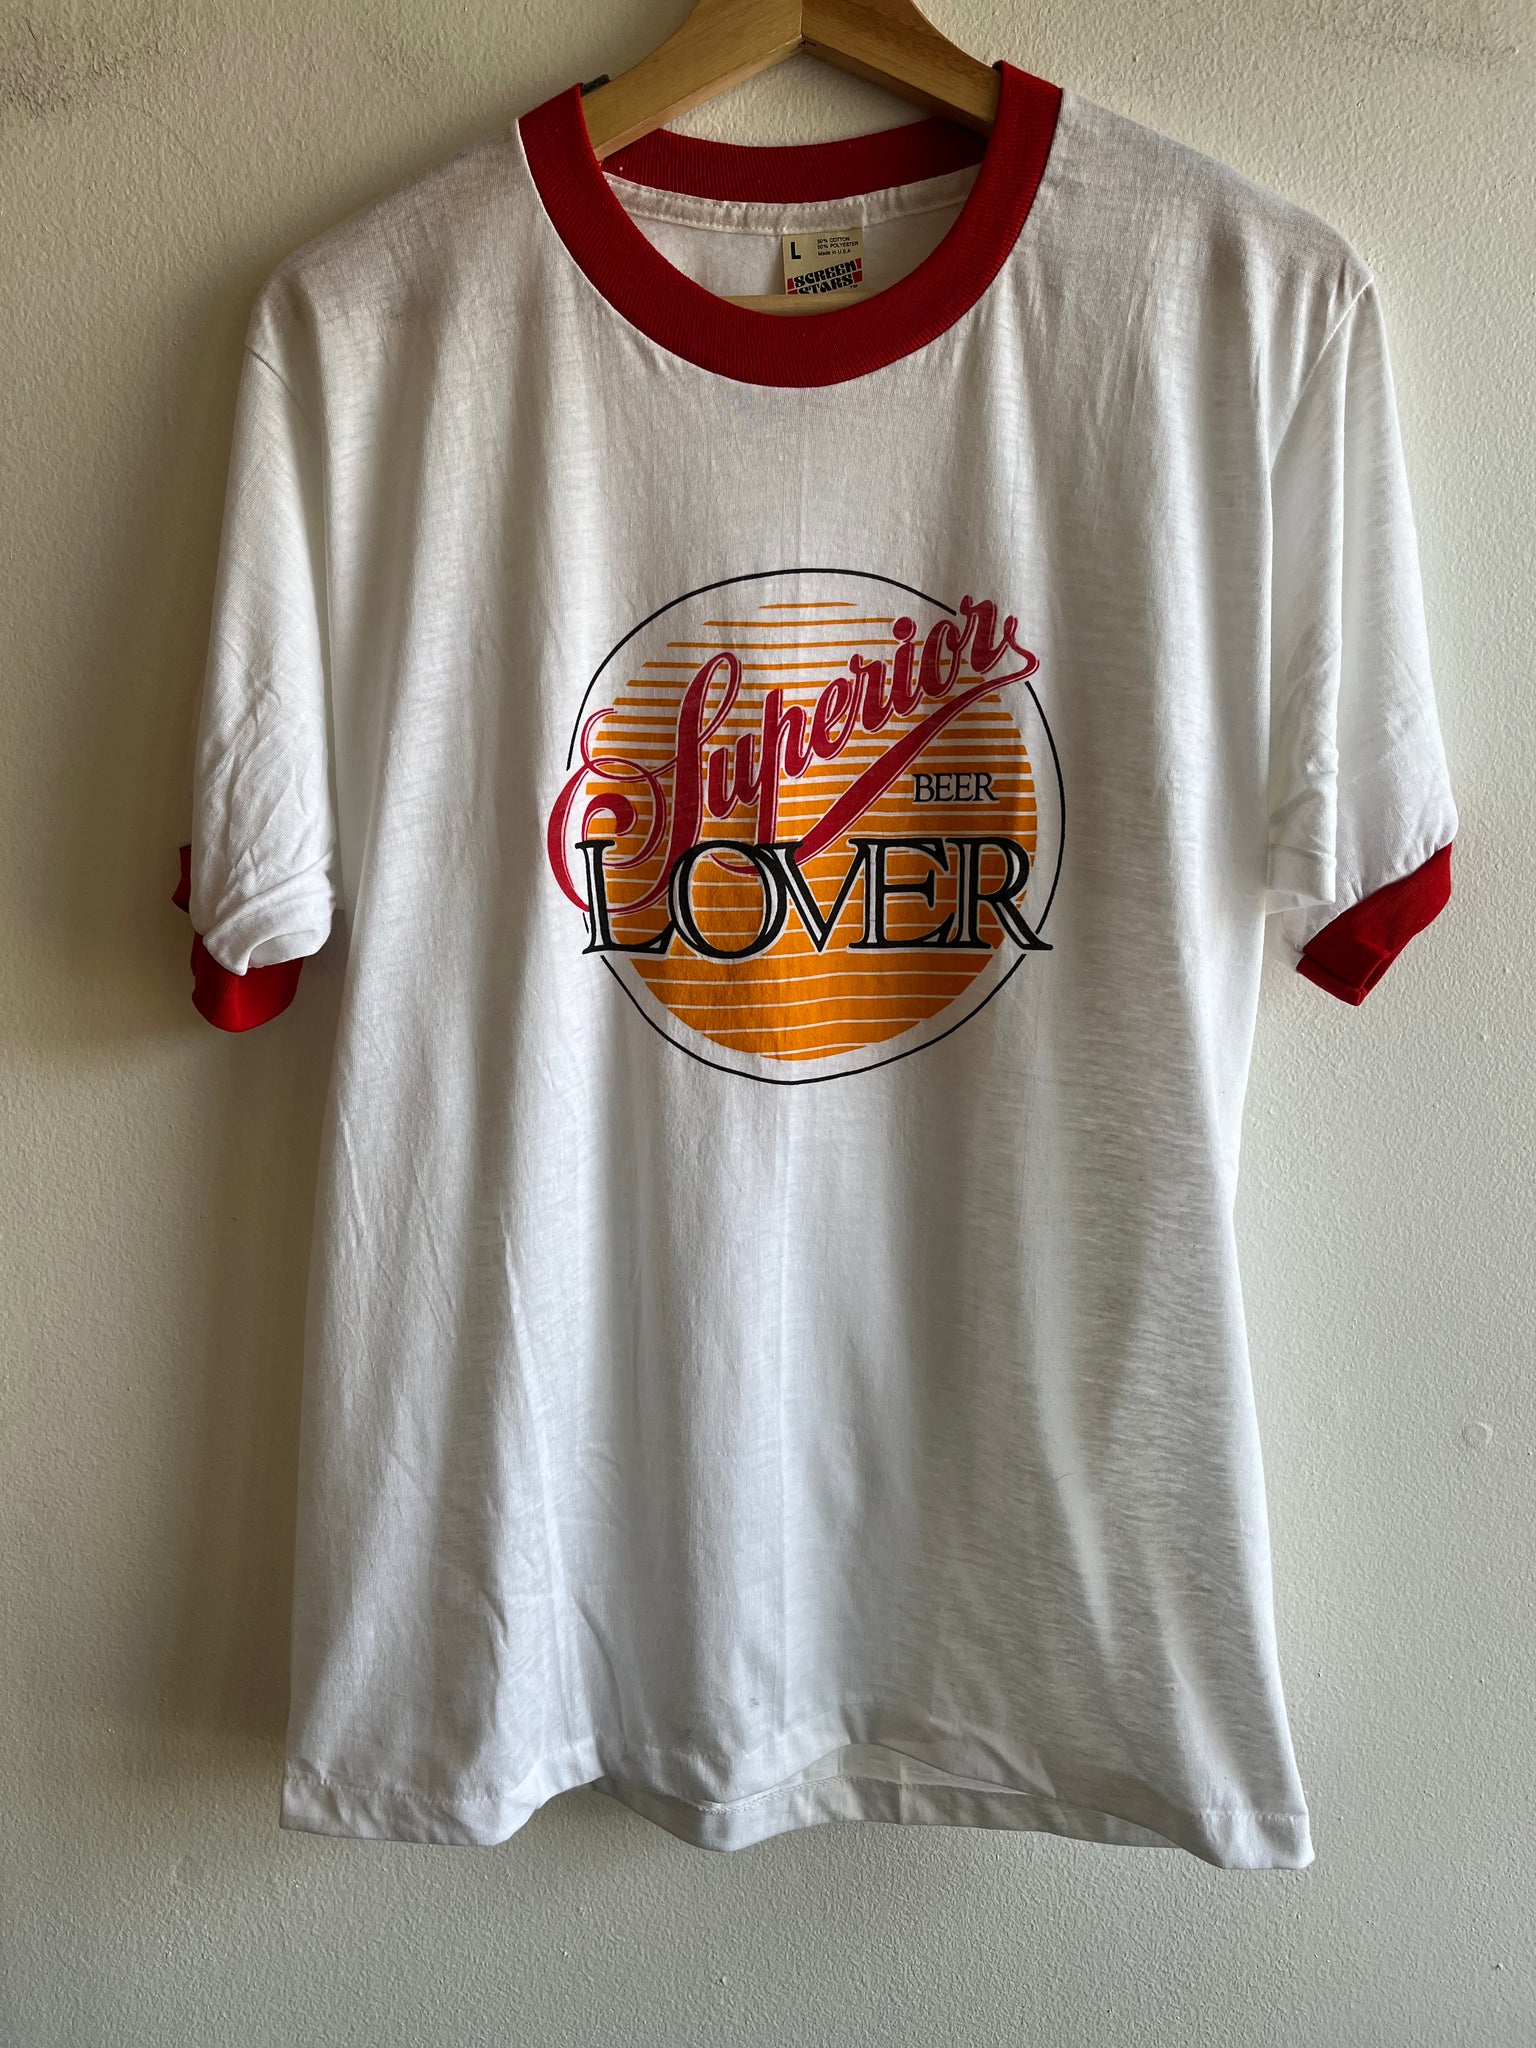 Vintage 1970/80’s Superior Beer Ringer T-Shirt